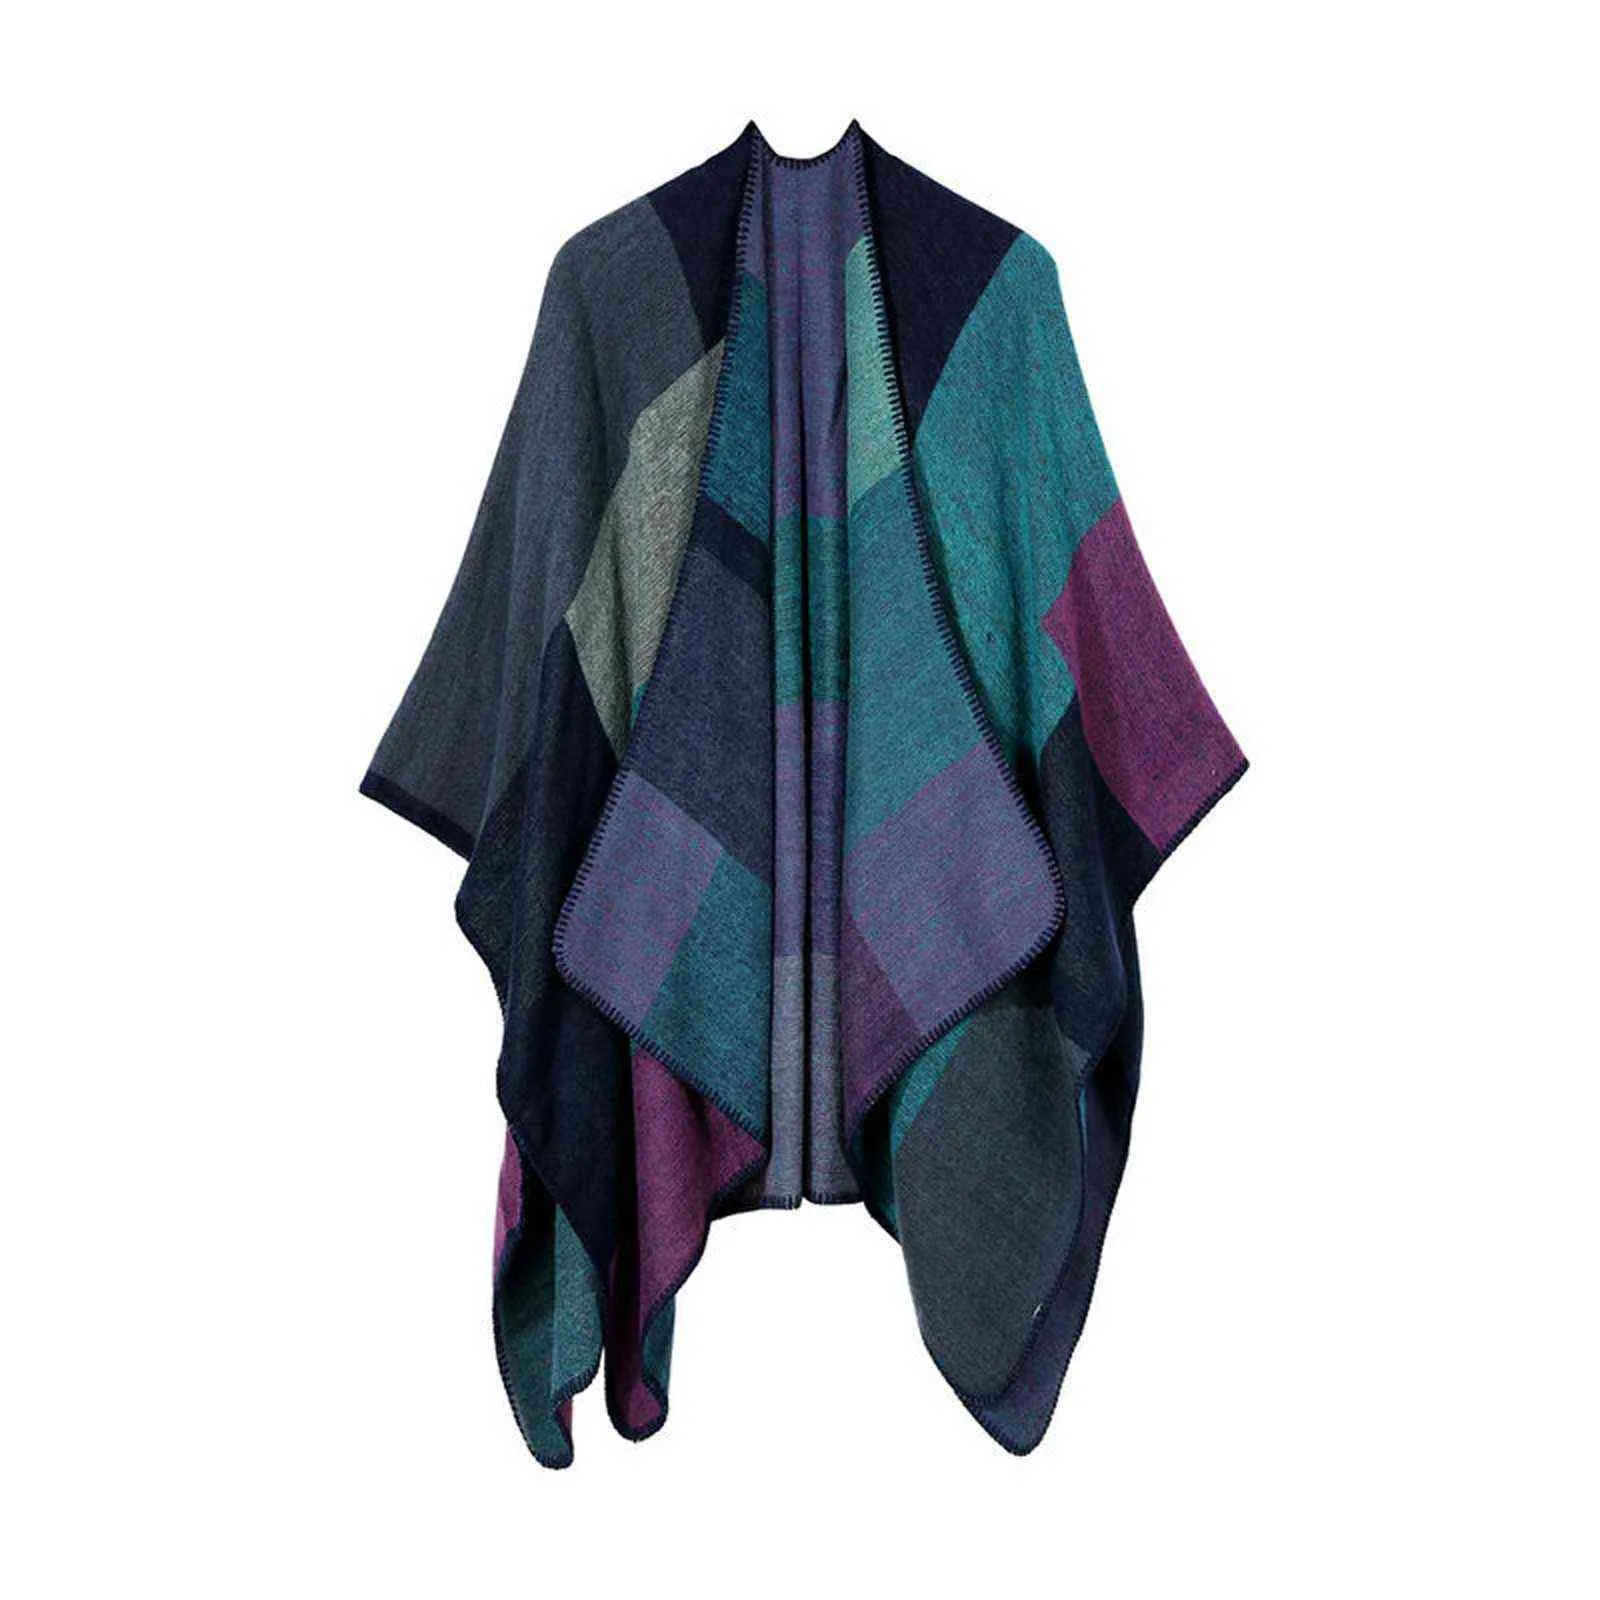 Mode Frauen Winter Herbstgestrickte Kaschmir Poncho Capes Schal Wrap Strickjacken Pullover Mantel Eleganter Schal Mantel Warme Mantel # G3 Y1122